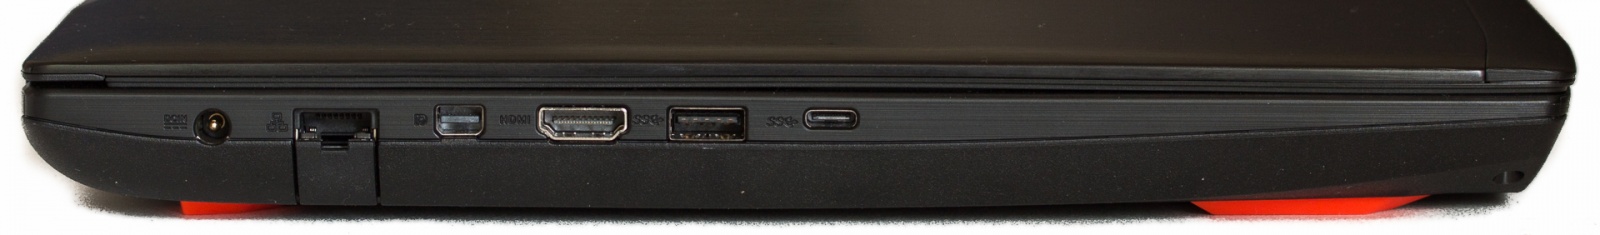 ноутбук ASUS GL502VM порты с левой стороны